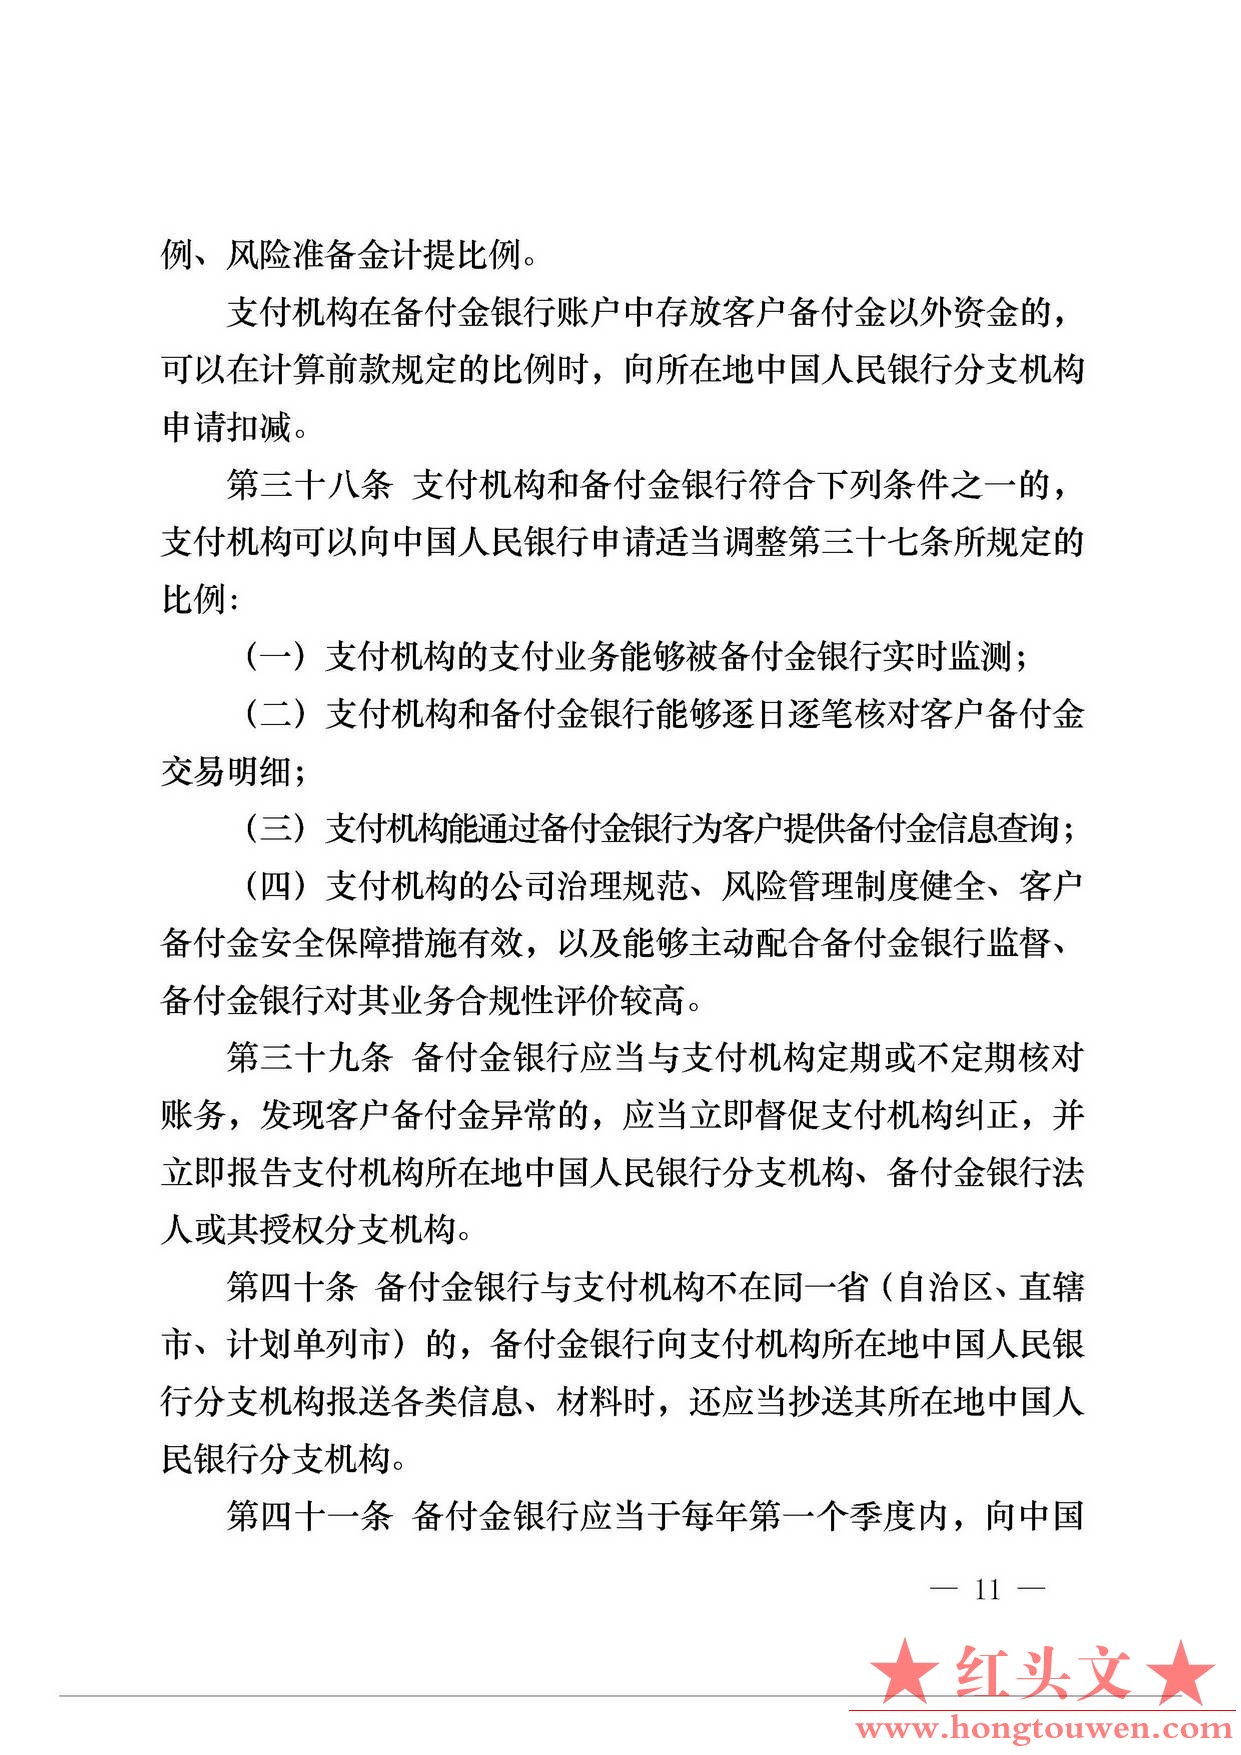 中国人民银行公告[2013]6号-《支付机构客户备付金存管办法》_页面_11.jpg.jpg